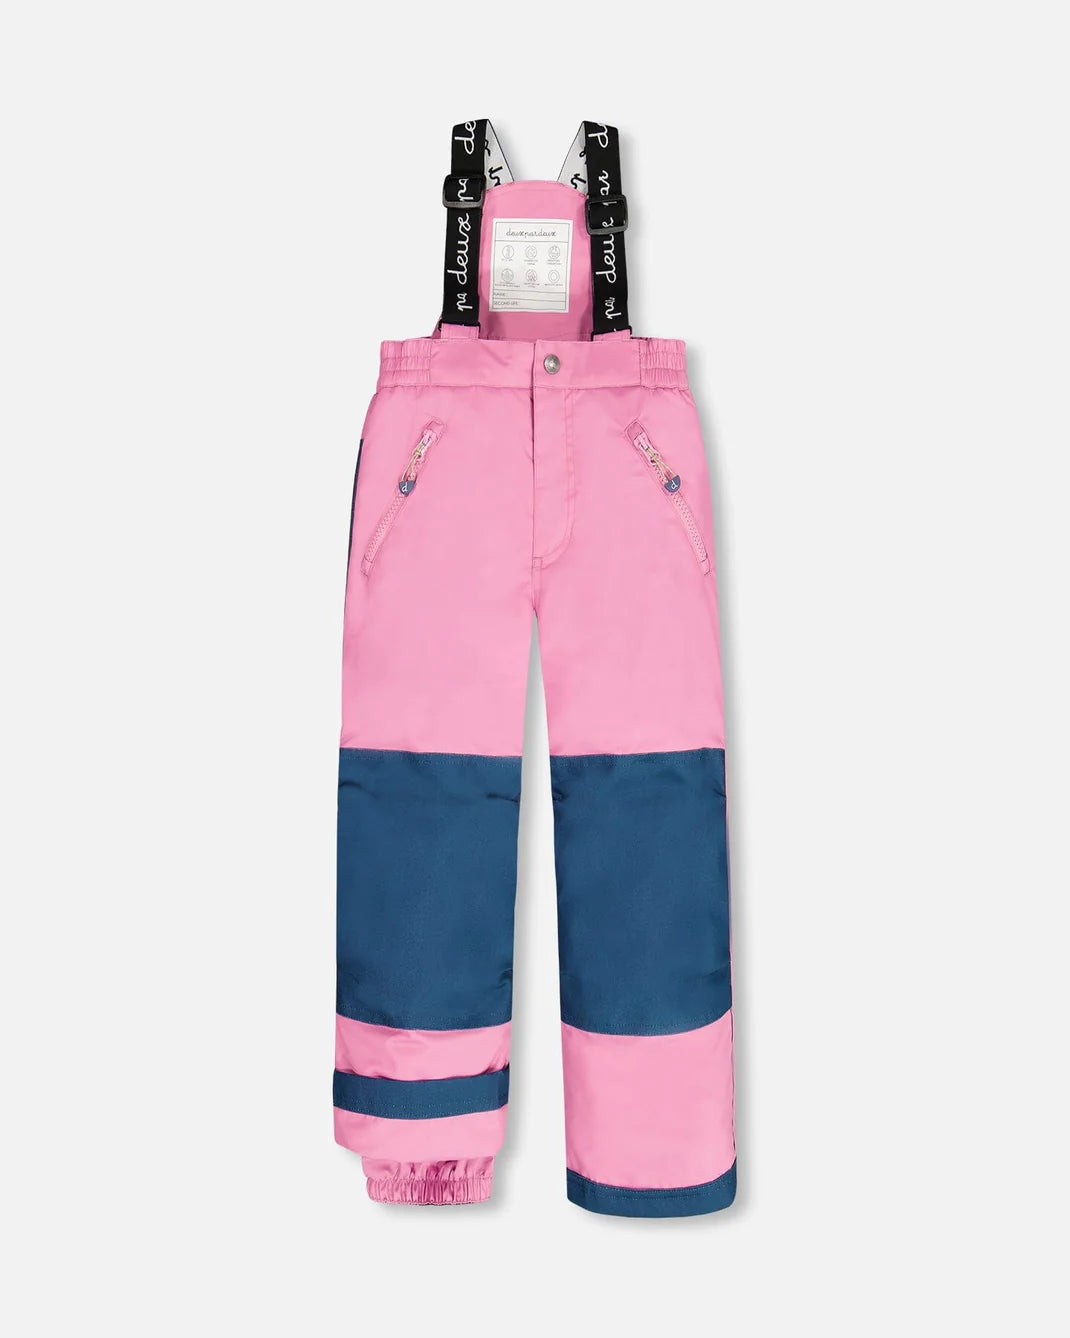 COLOR KIDS Girls' Ski Pants in Pink - Color Kids Snowsuits - Color